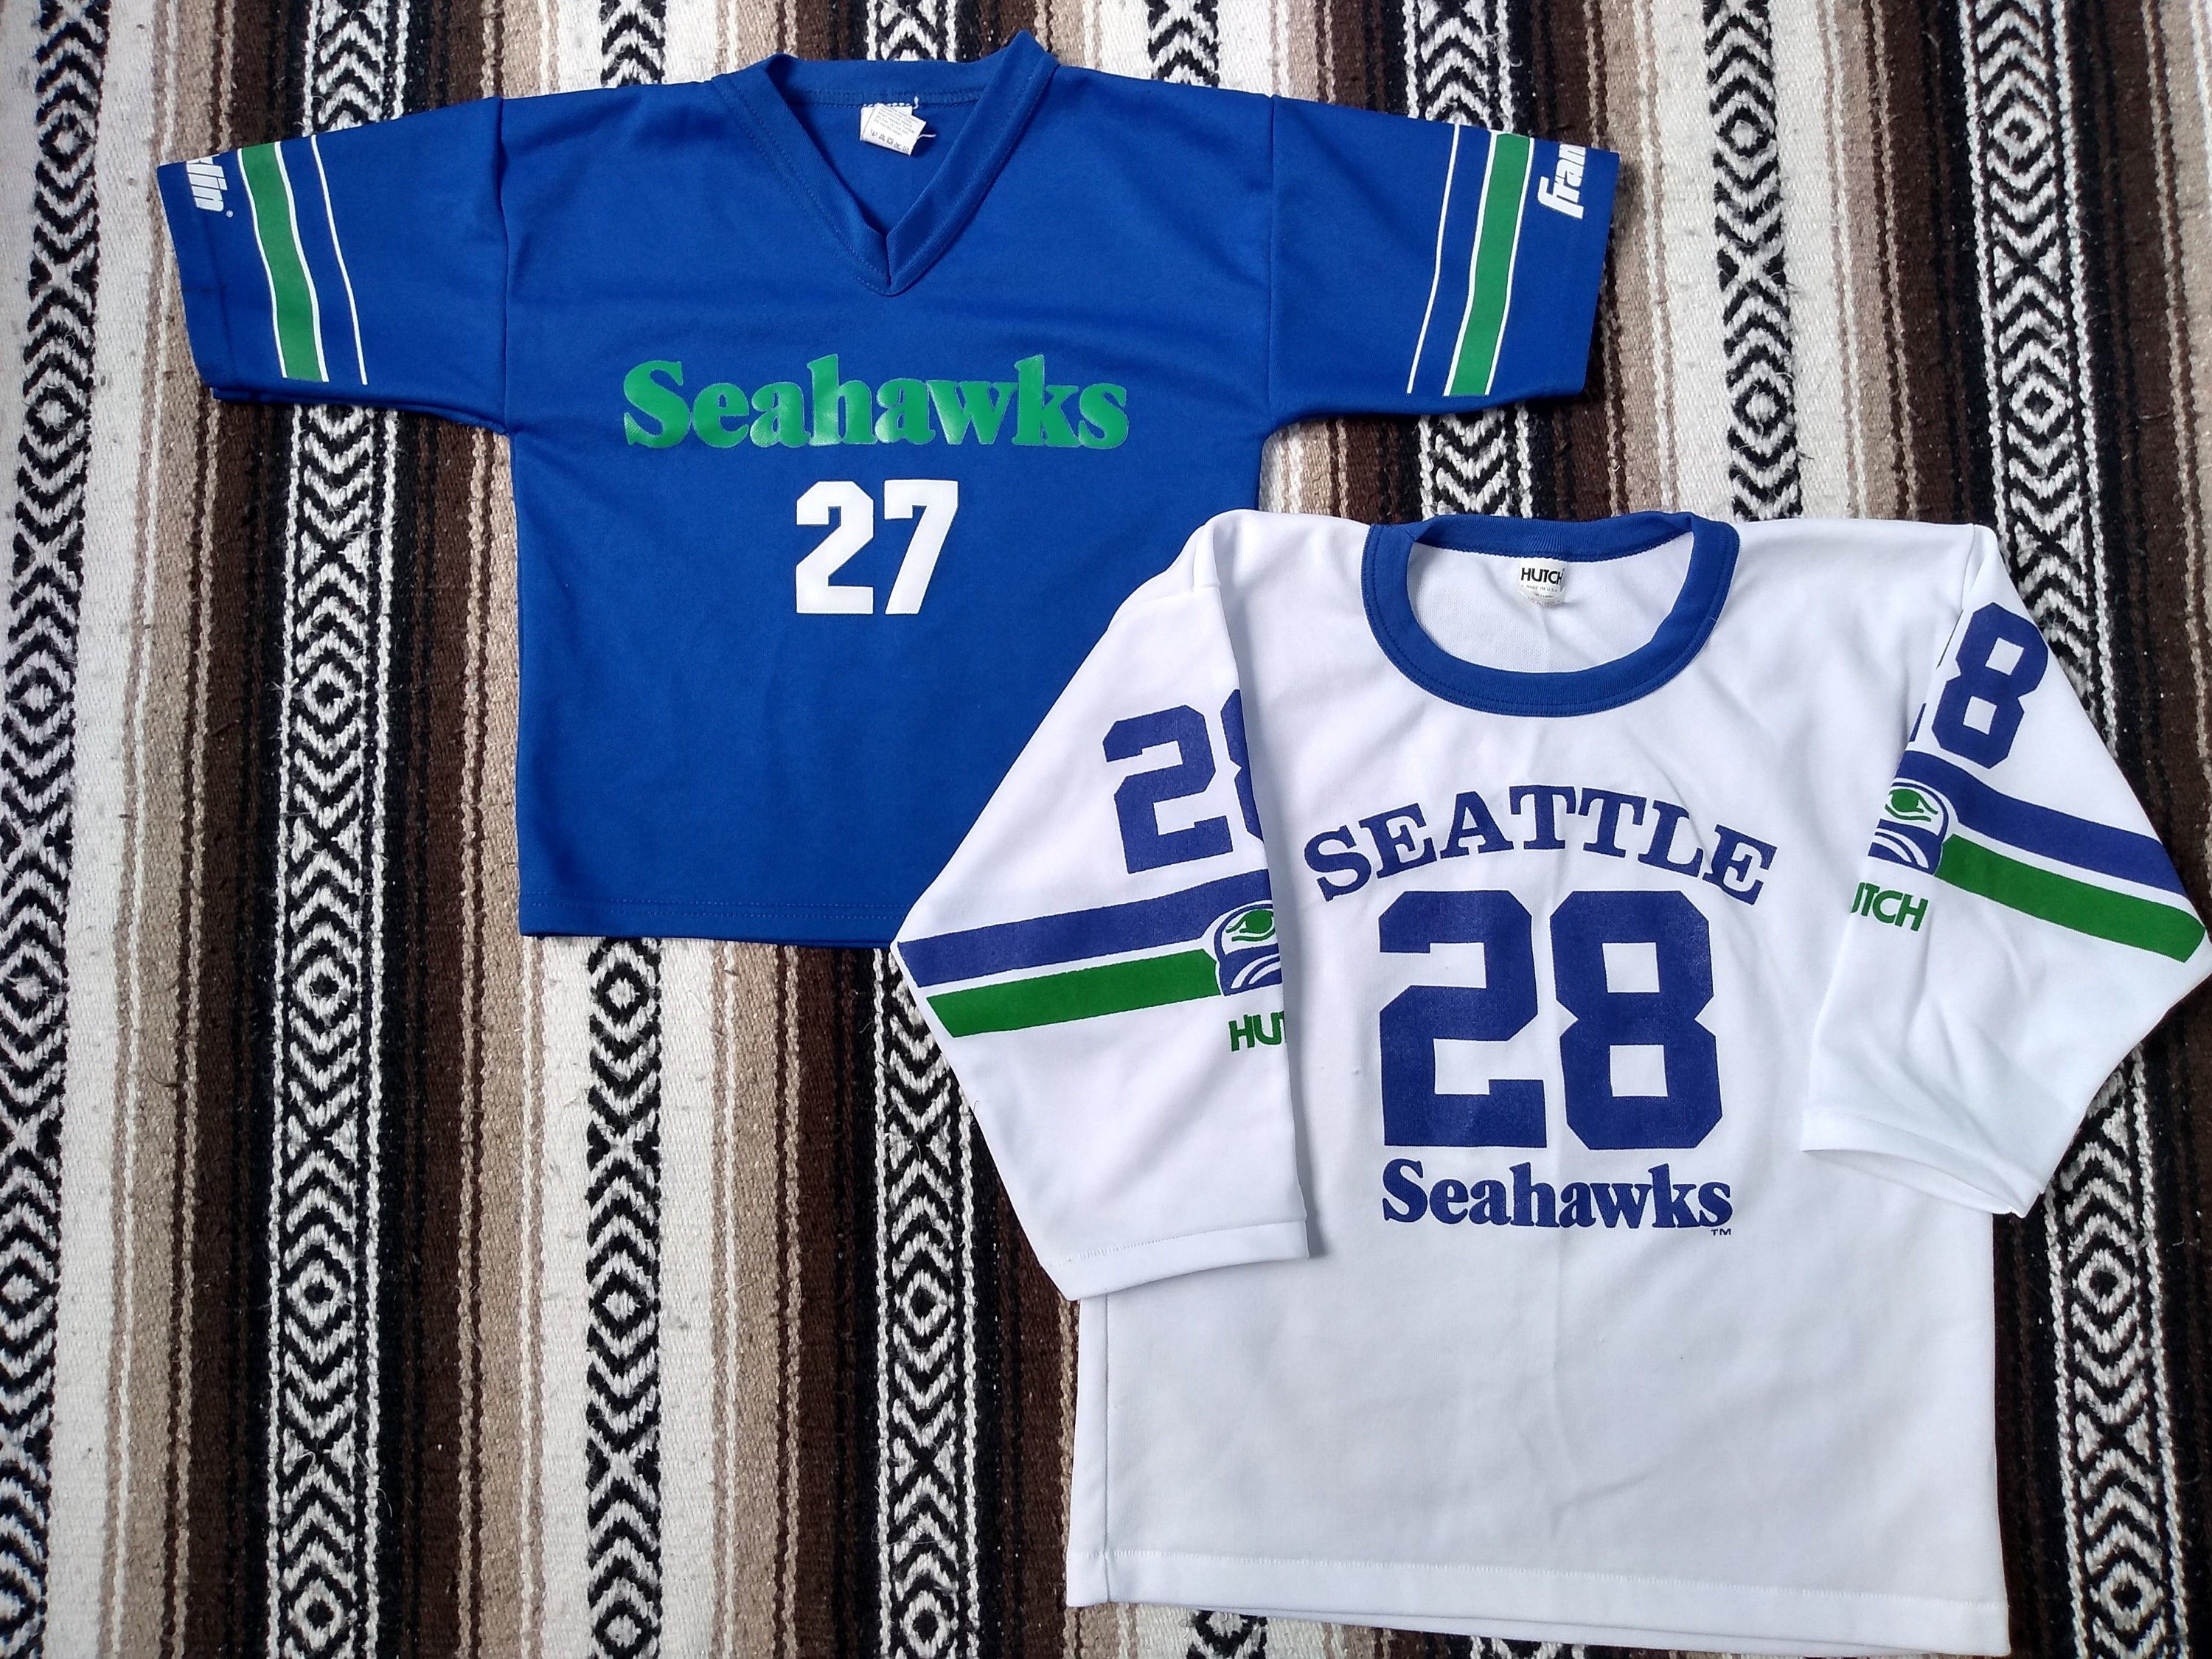 Vintage seattle seahawks jerseys